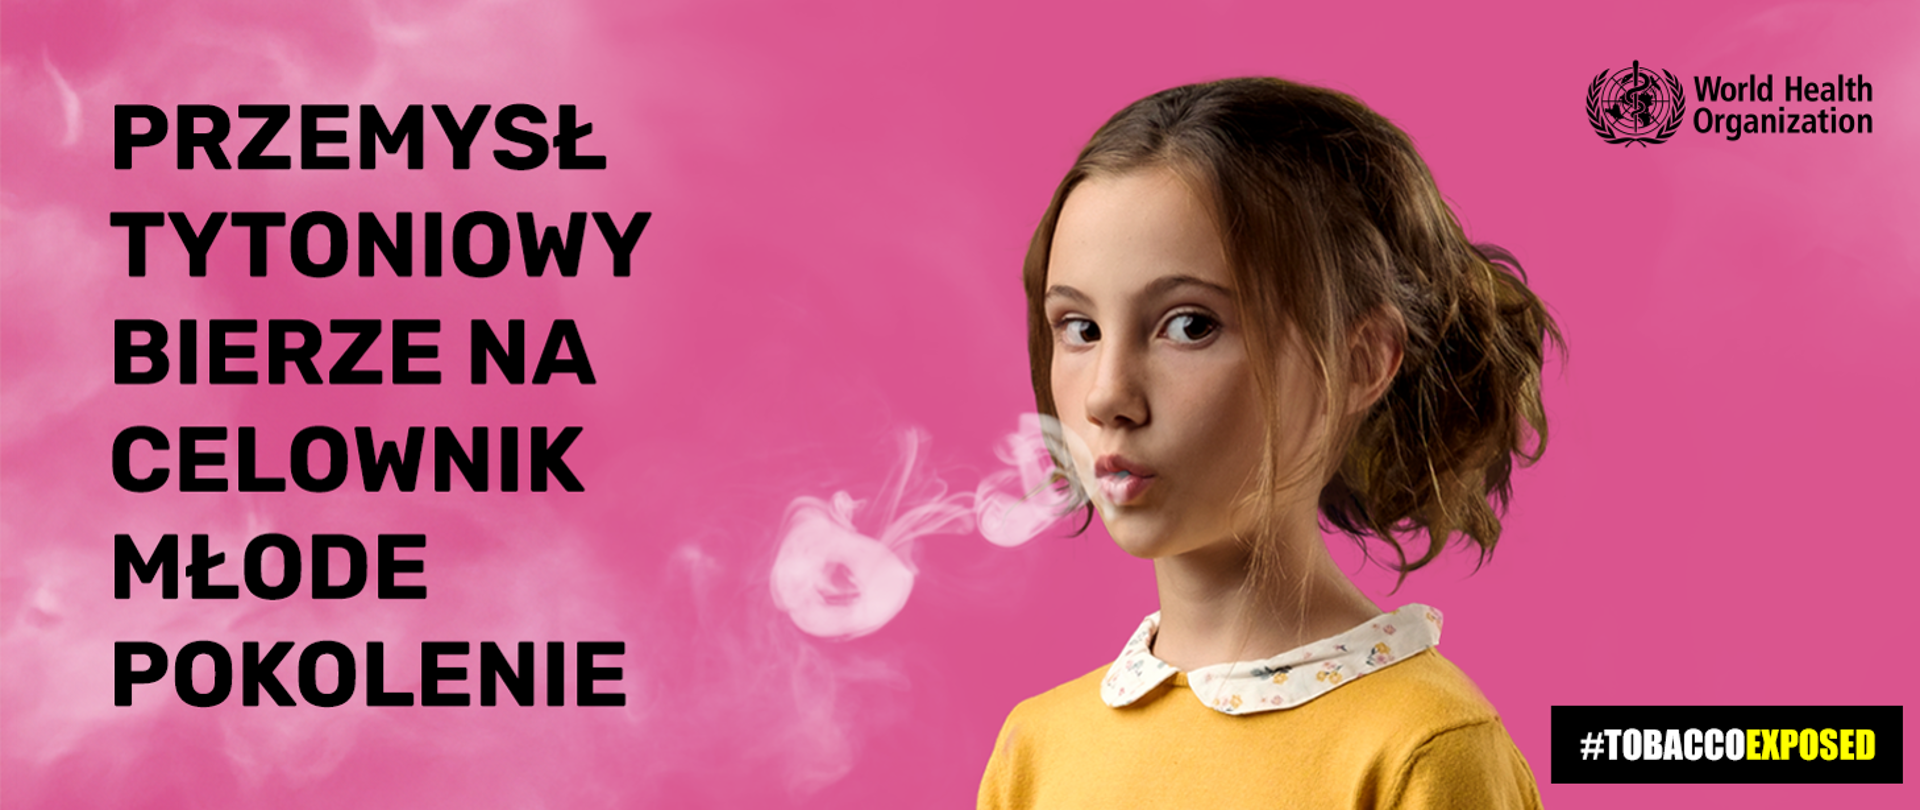 Przemysł tytoniowy bierze na celownik młode pokolenie - na zdjęciu widoczna dziewczynka wydychająca dym tytoniowy